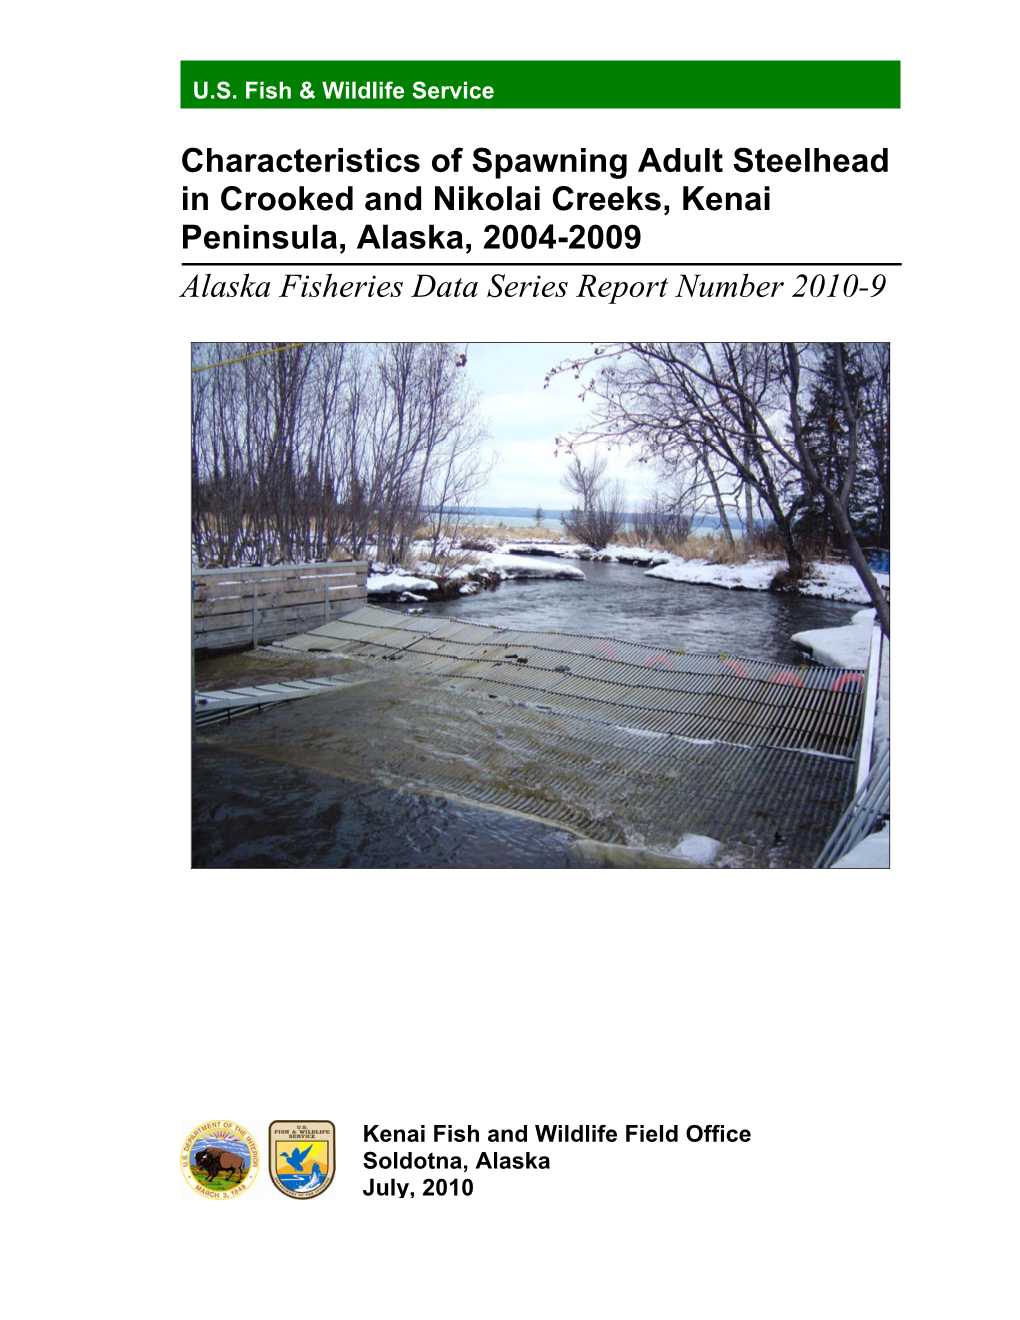 Characteristics of Spawning Adult Steelhead in Crooked and Nikolai Creeks, Kenai Peninsula, Alaska, 2004-2009 Alaska Fisheries Data Series Report Number 2010-9